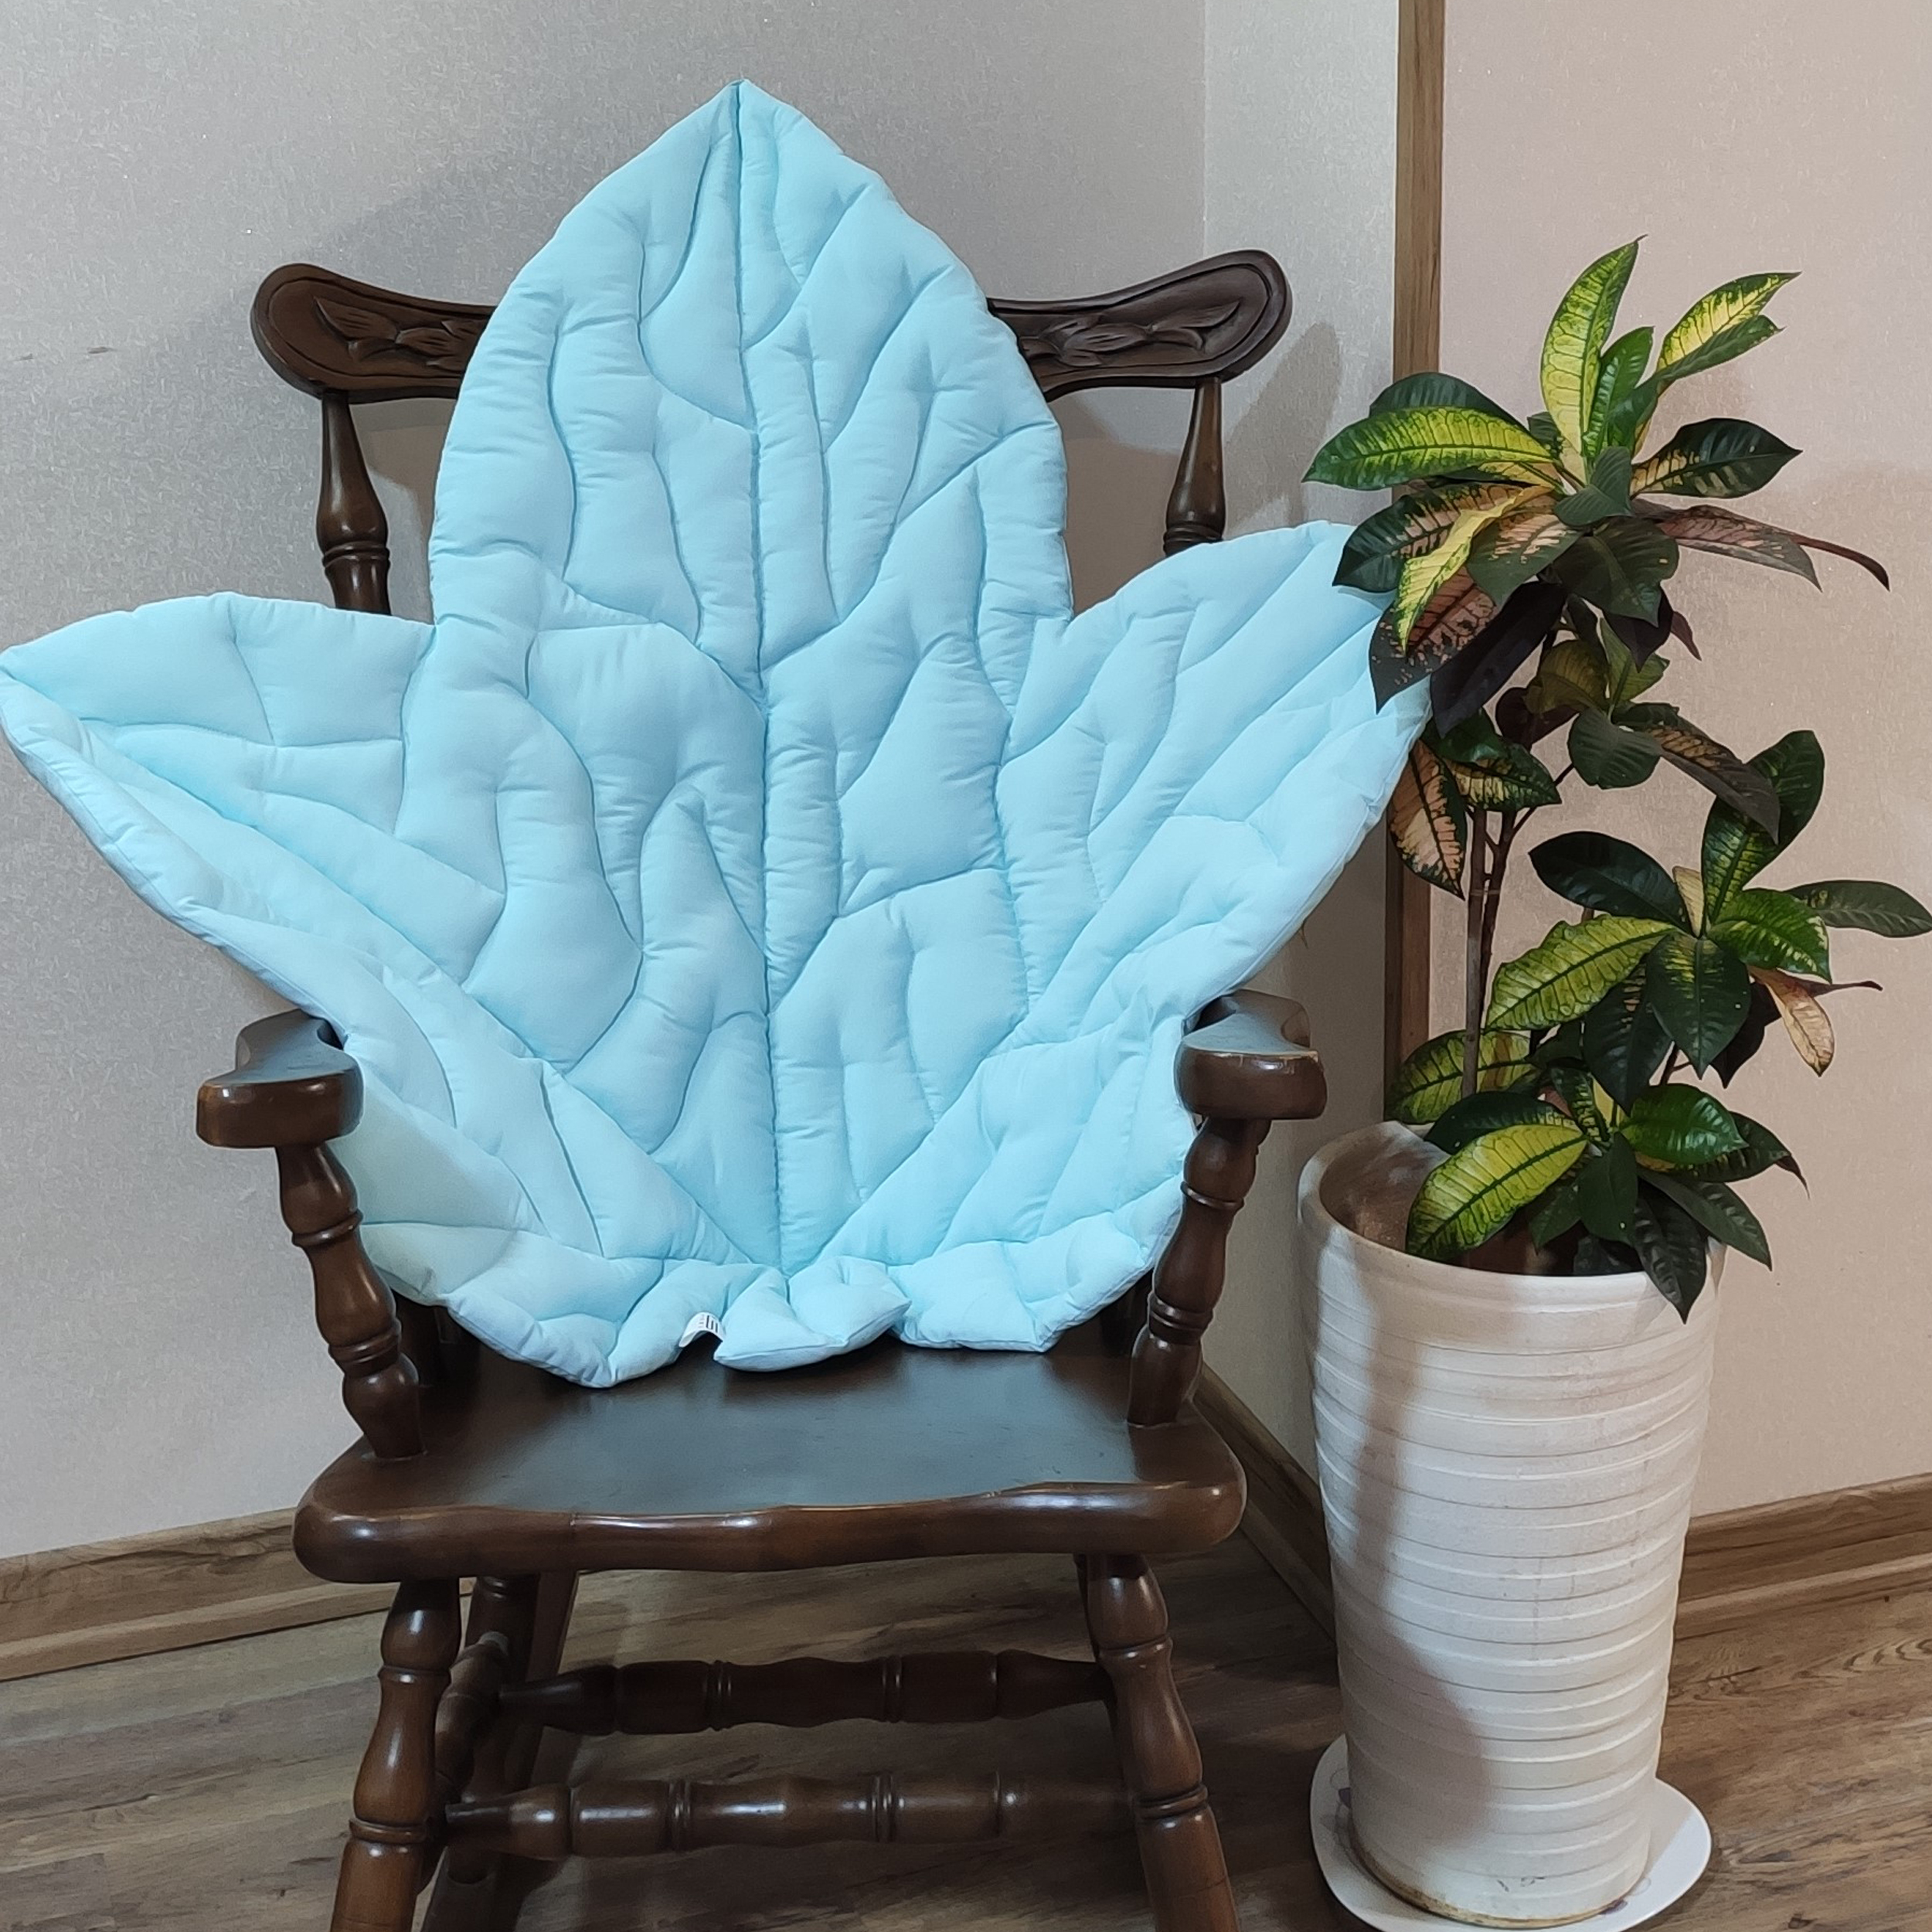 شال مبل و تخت مدل برگ پاییزی کسا کد 0301-4